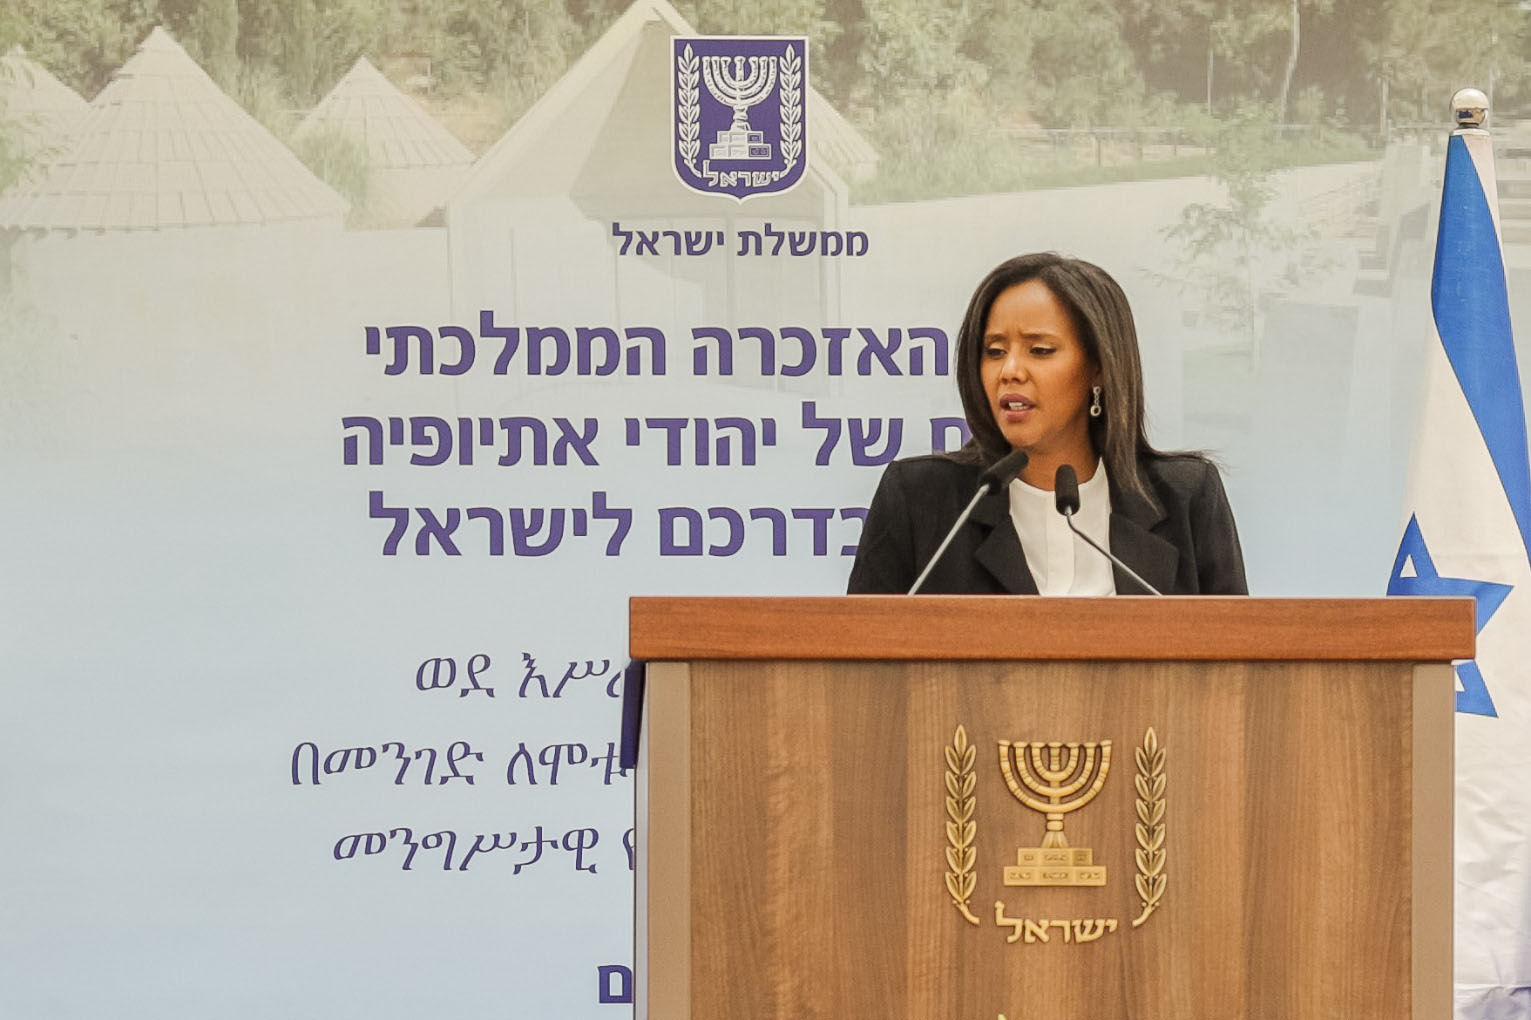 השרה פנינה תמנו שטה בטקס הממלכתי ליום הזיכרון ליהודי אתיופיה שנספו בדרכם לישראל 2021 (צילום: נגה מלסה)